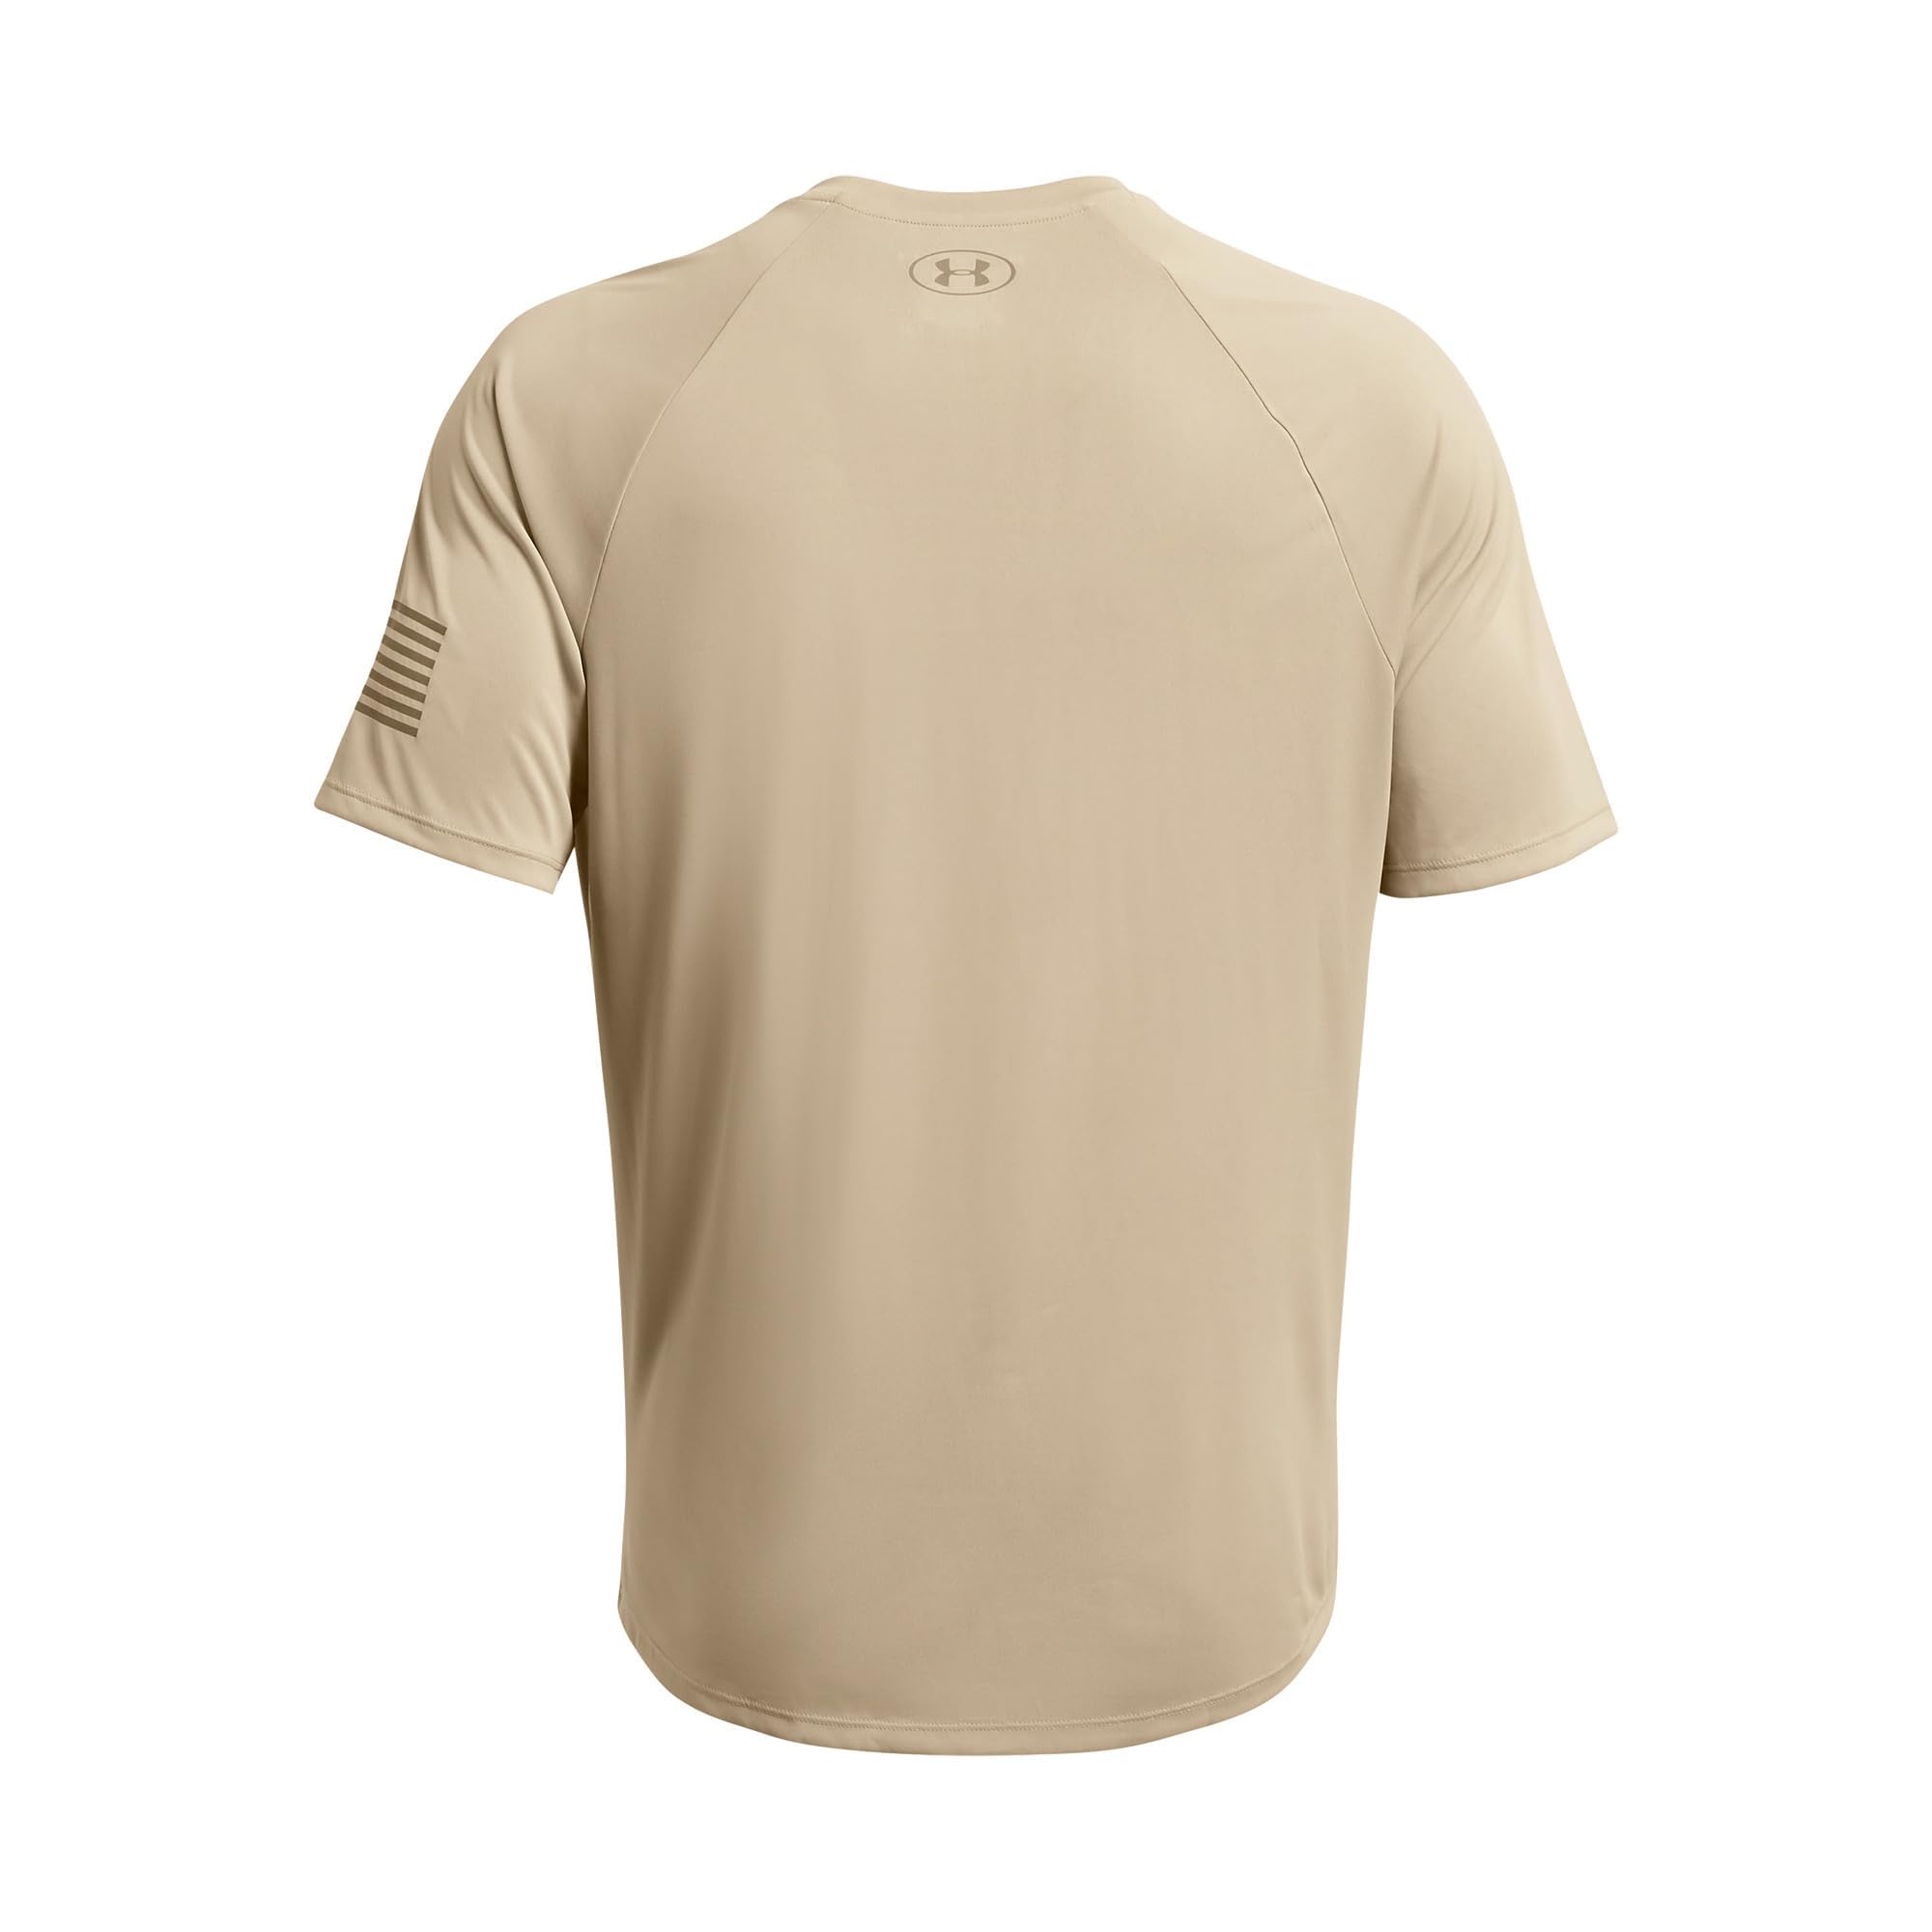 Under Armour Men's Freedom Tech Short Sleeve T-Shirt